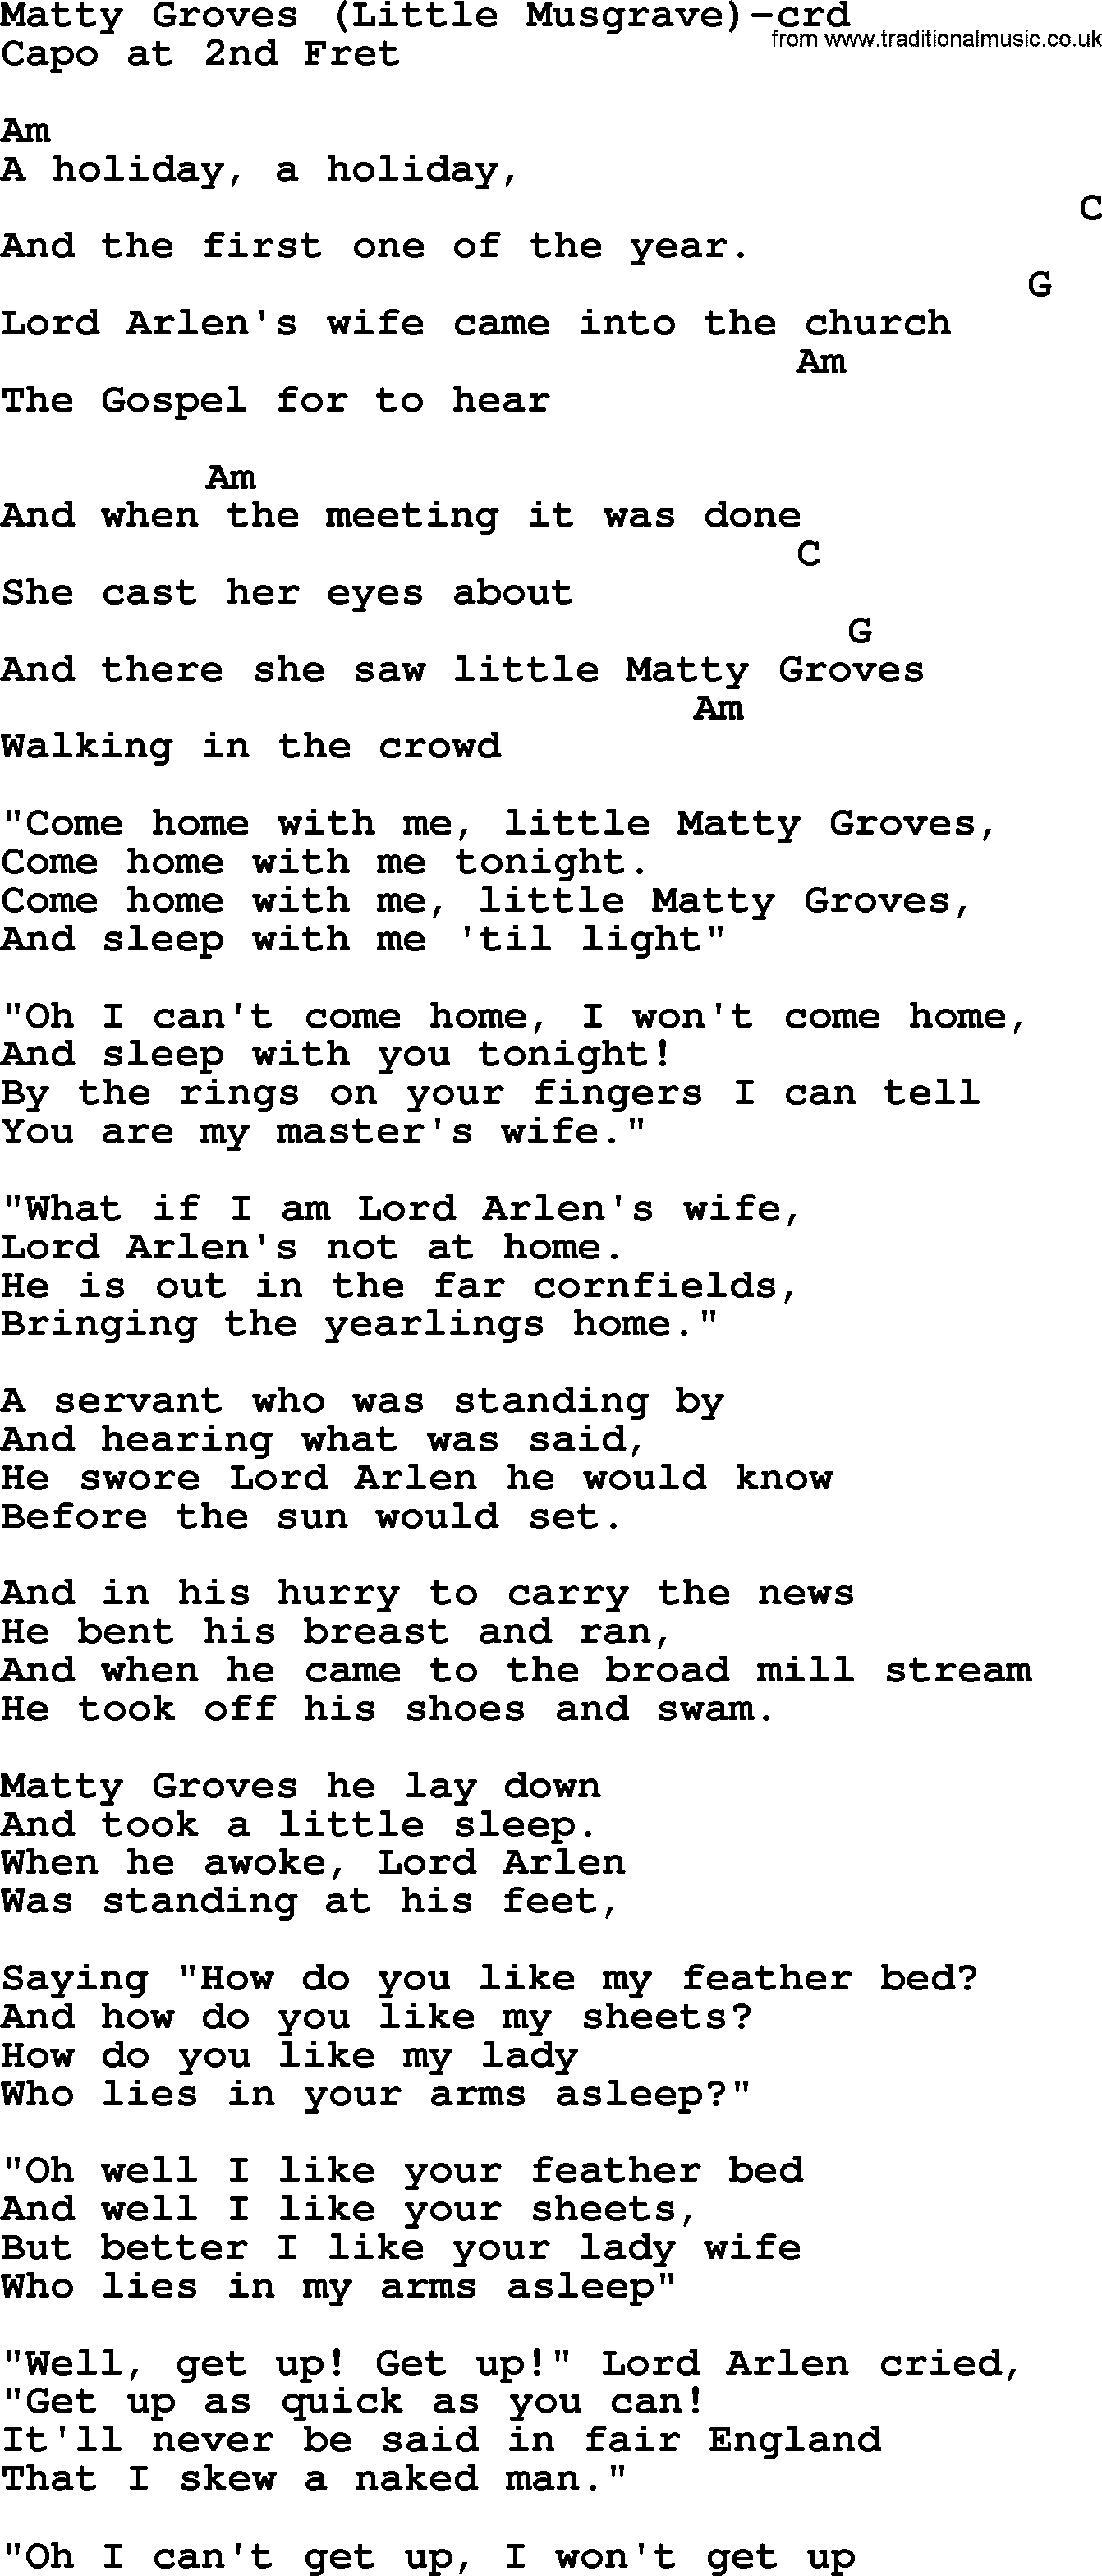 Joan Baez song Matty Groves  Little Musgrave lyrics and chords